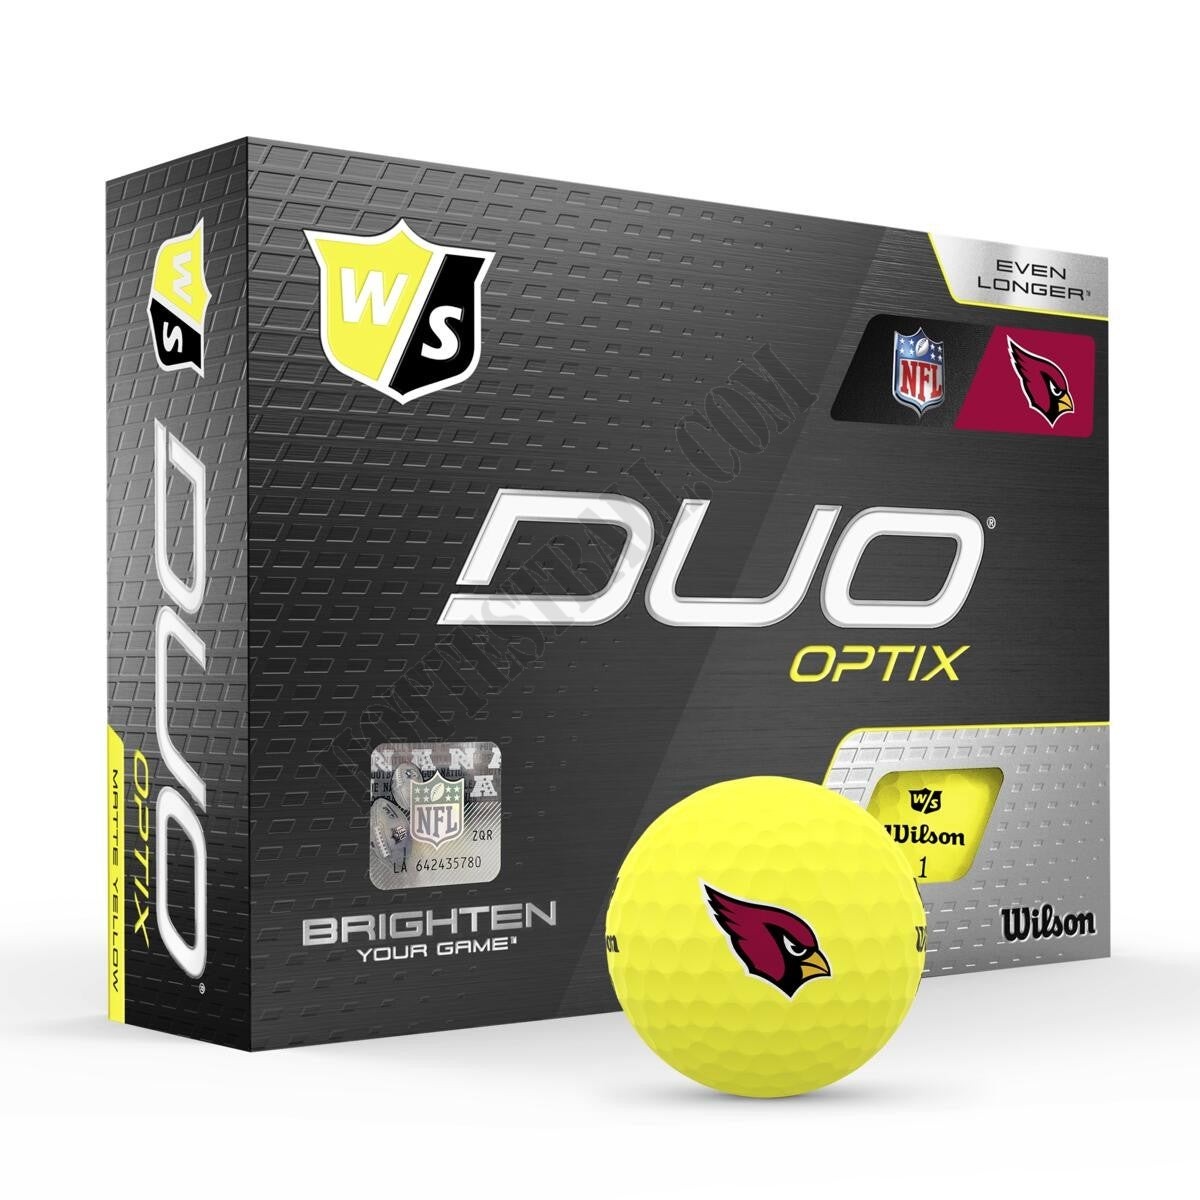 Duo Optix NFL Golf Balls - Arizona Cardinals ● Wilson Promotions - Duo Optix NFL Golf Balls - Arizona Cardinals ● Wilson Promotions